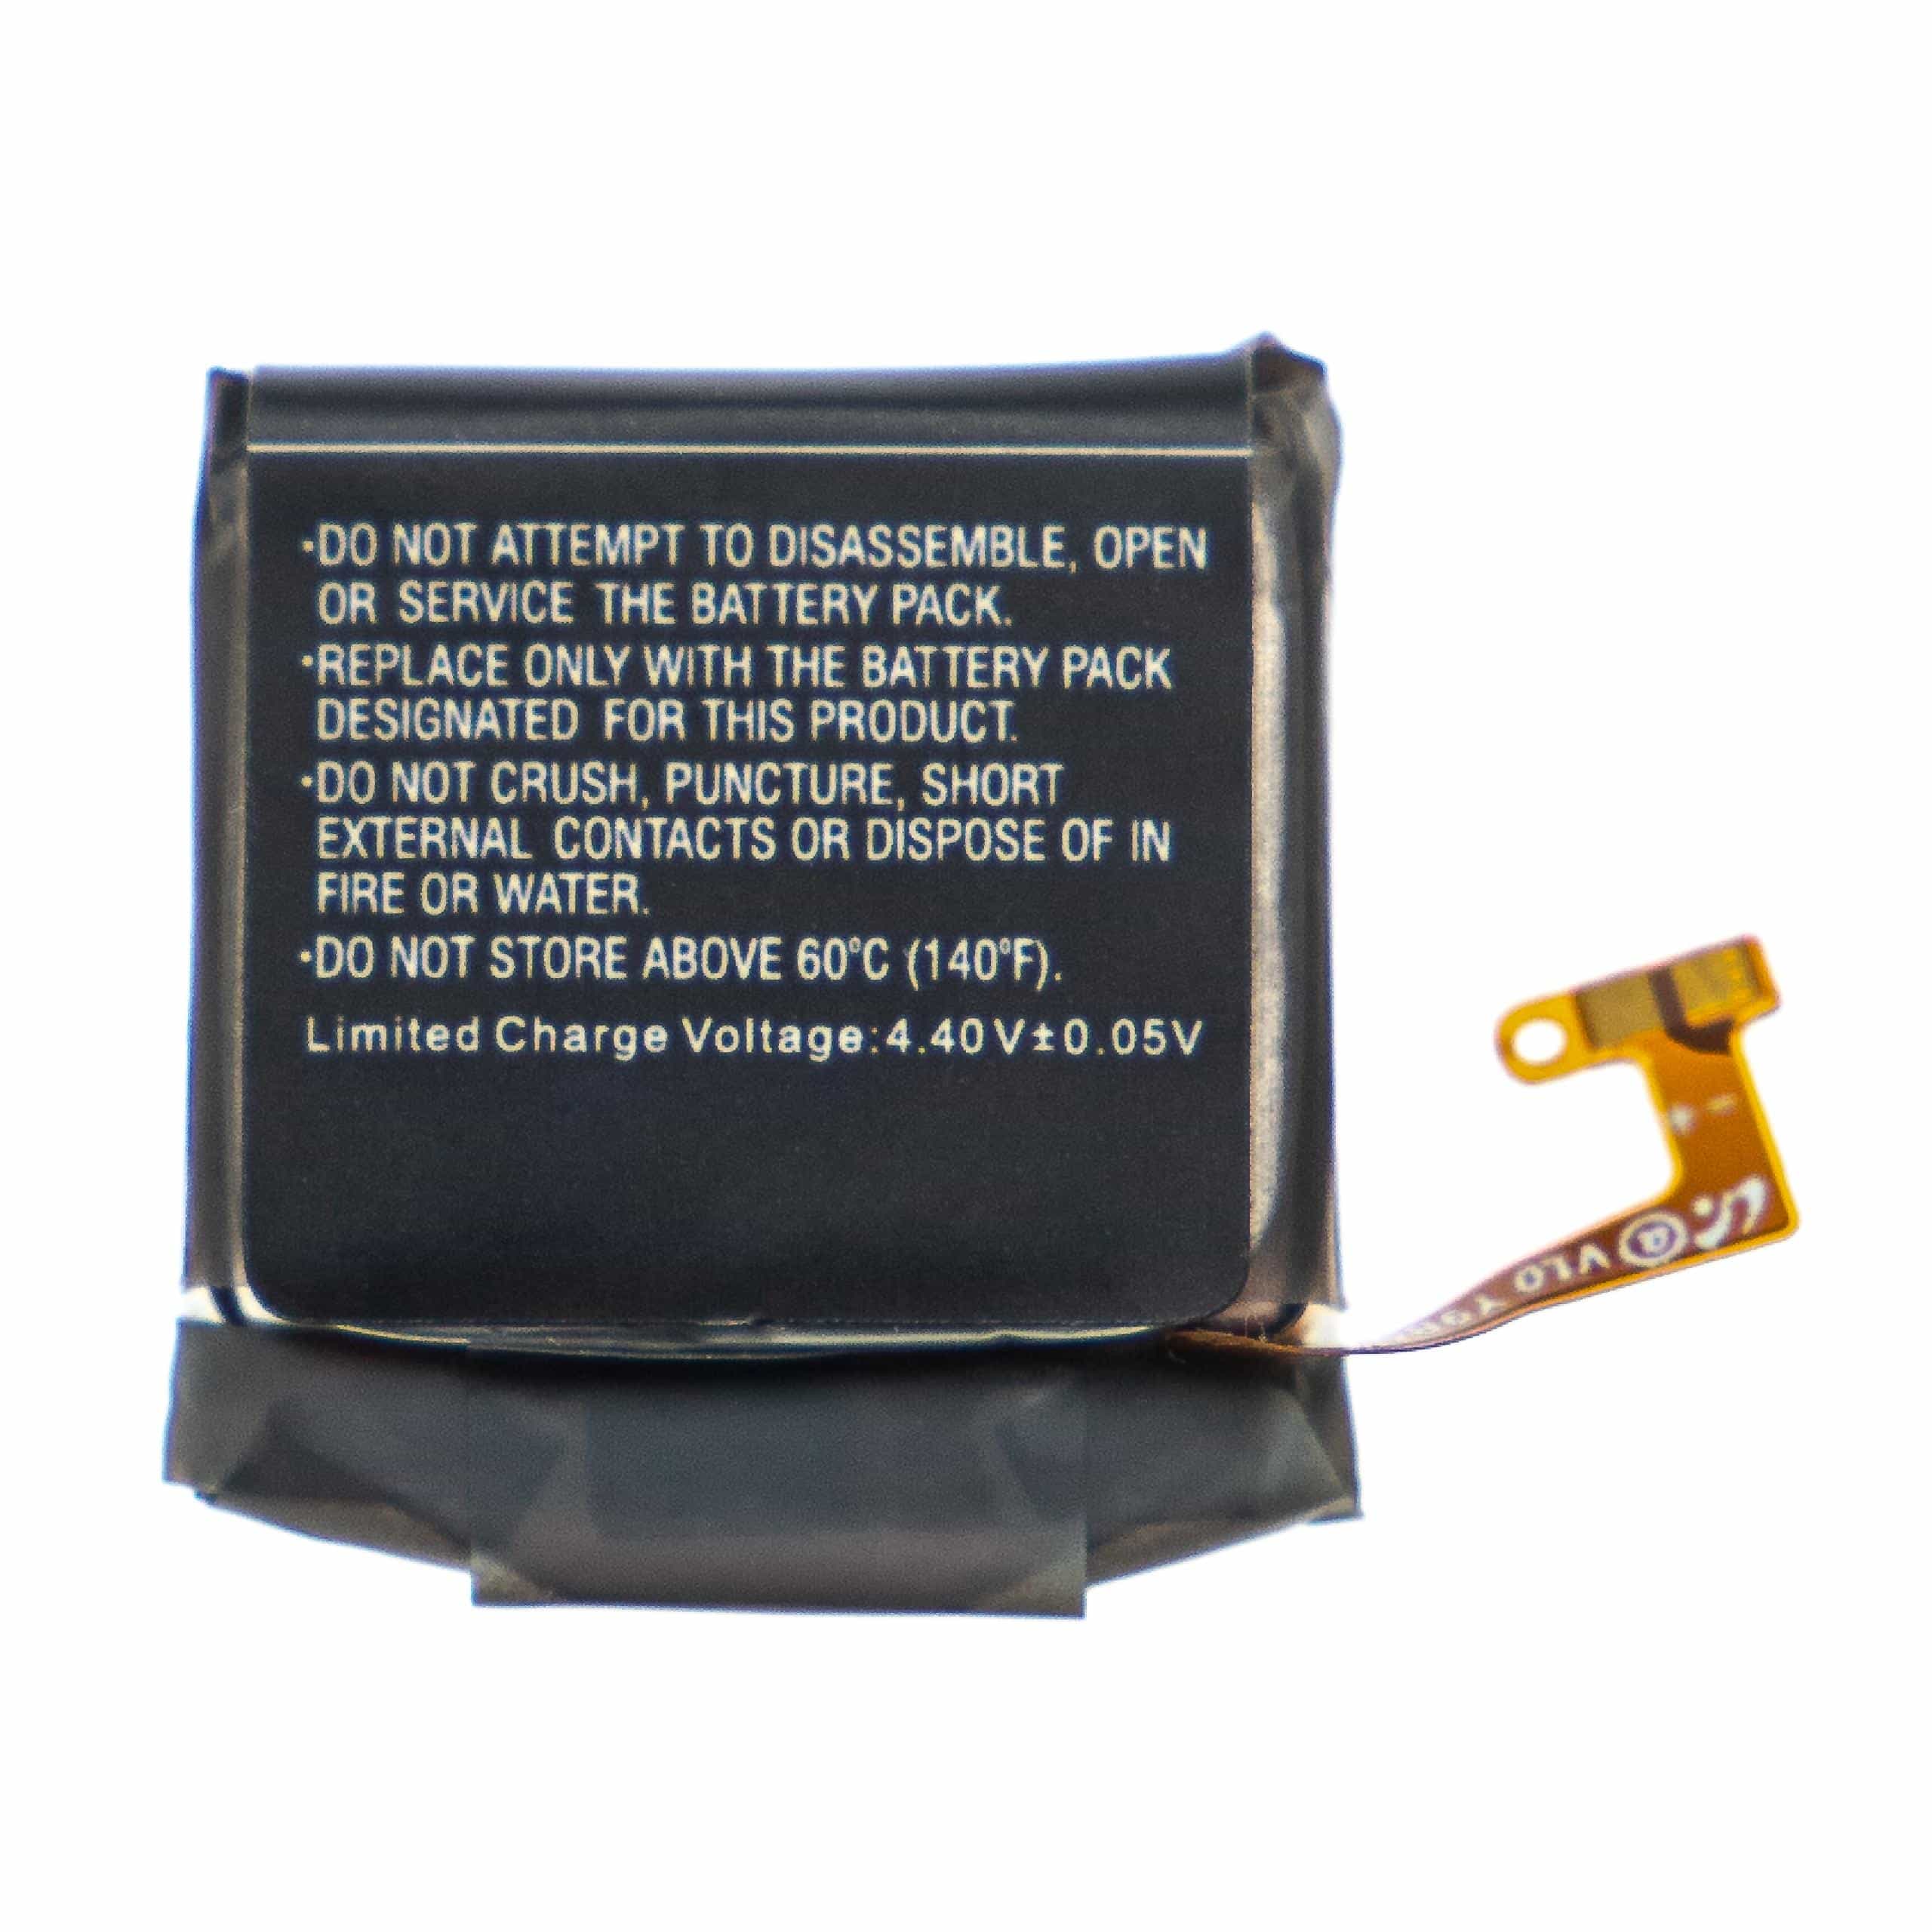 Akumulator do smartwatch / opaski fitness zamiennik Samsung EB-BR830ABY, GH43-04968A - 220 mAh 3,85 V LiPo